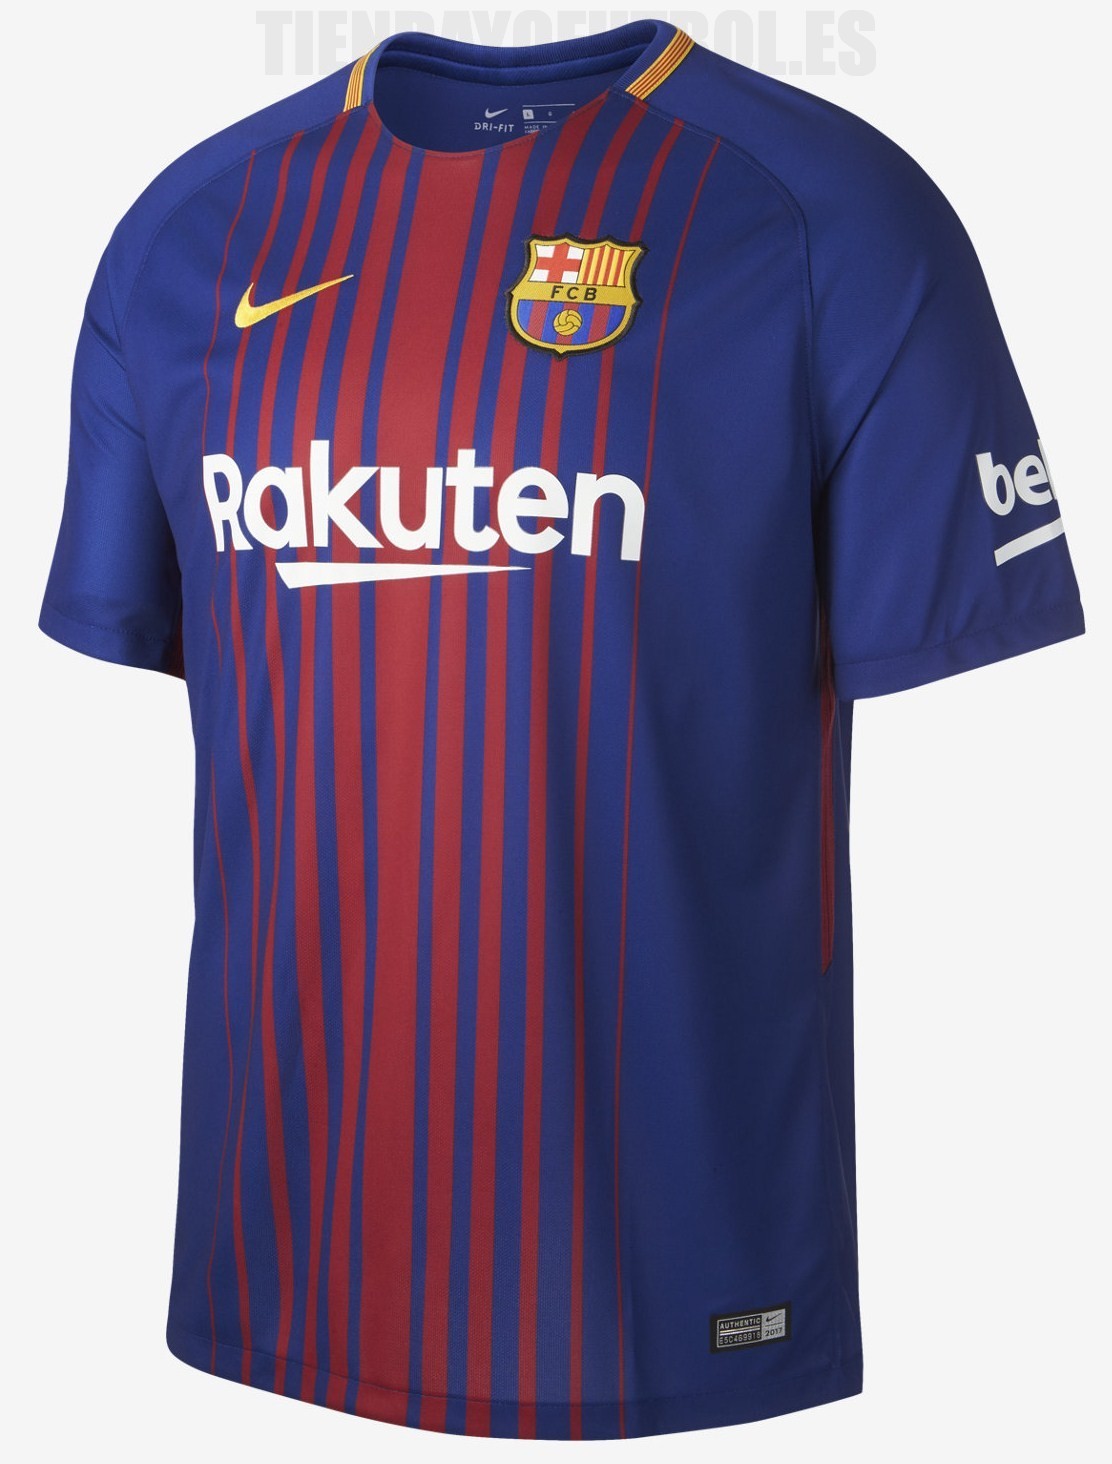 Sobriqueta Desnatar Usando una computadora Barcelona FC camiseta 2017/18| camiseta oficial futbol | Camiseta fútbol  Barça